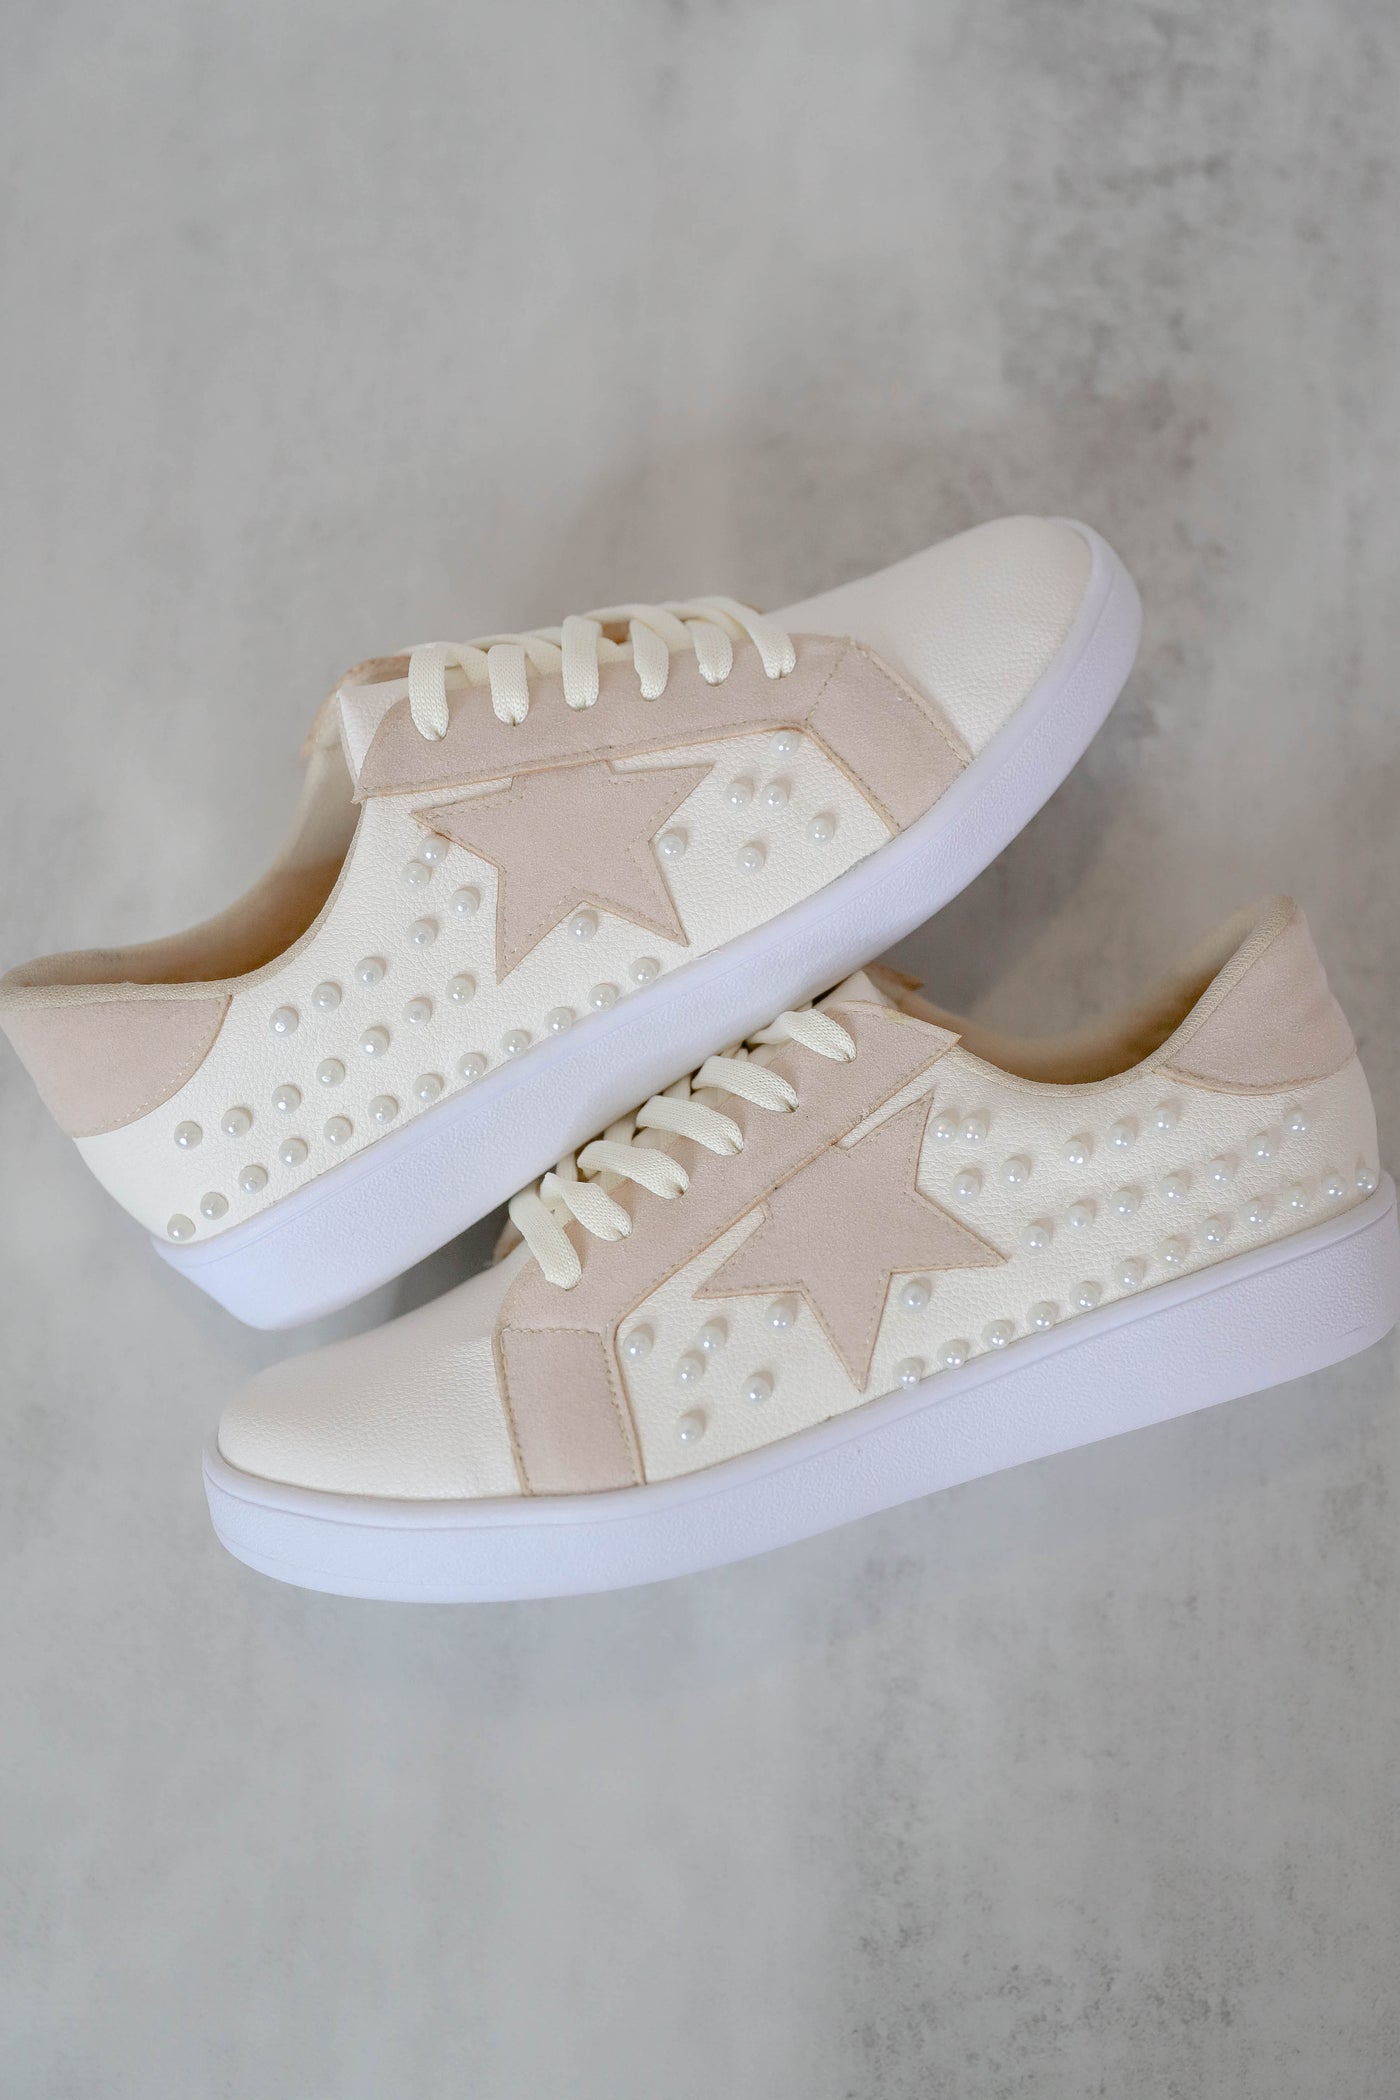 Trendy Star Sneakers- Women's Pearl Star Sneakers- Ivory Star Sneakers